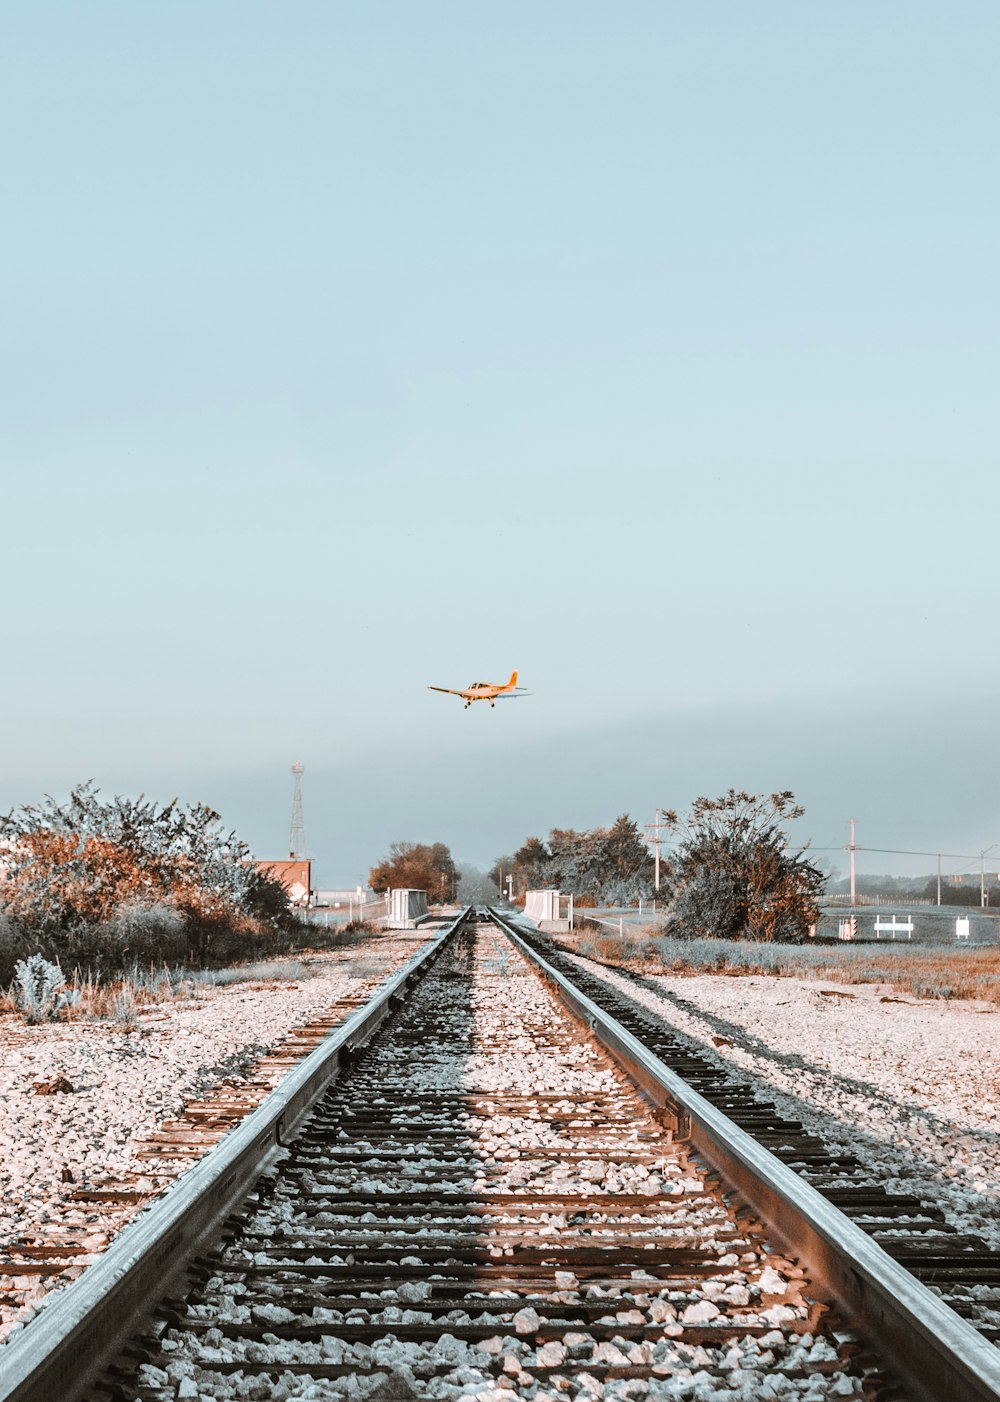 monoplano naranja volando sobre una vía férrea